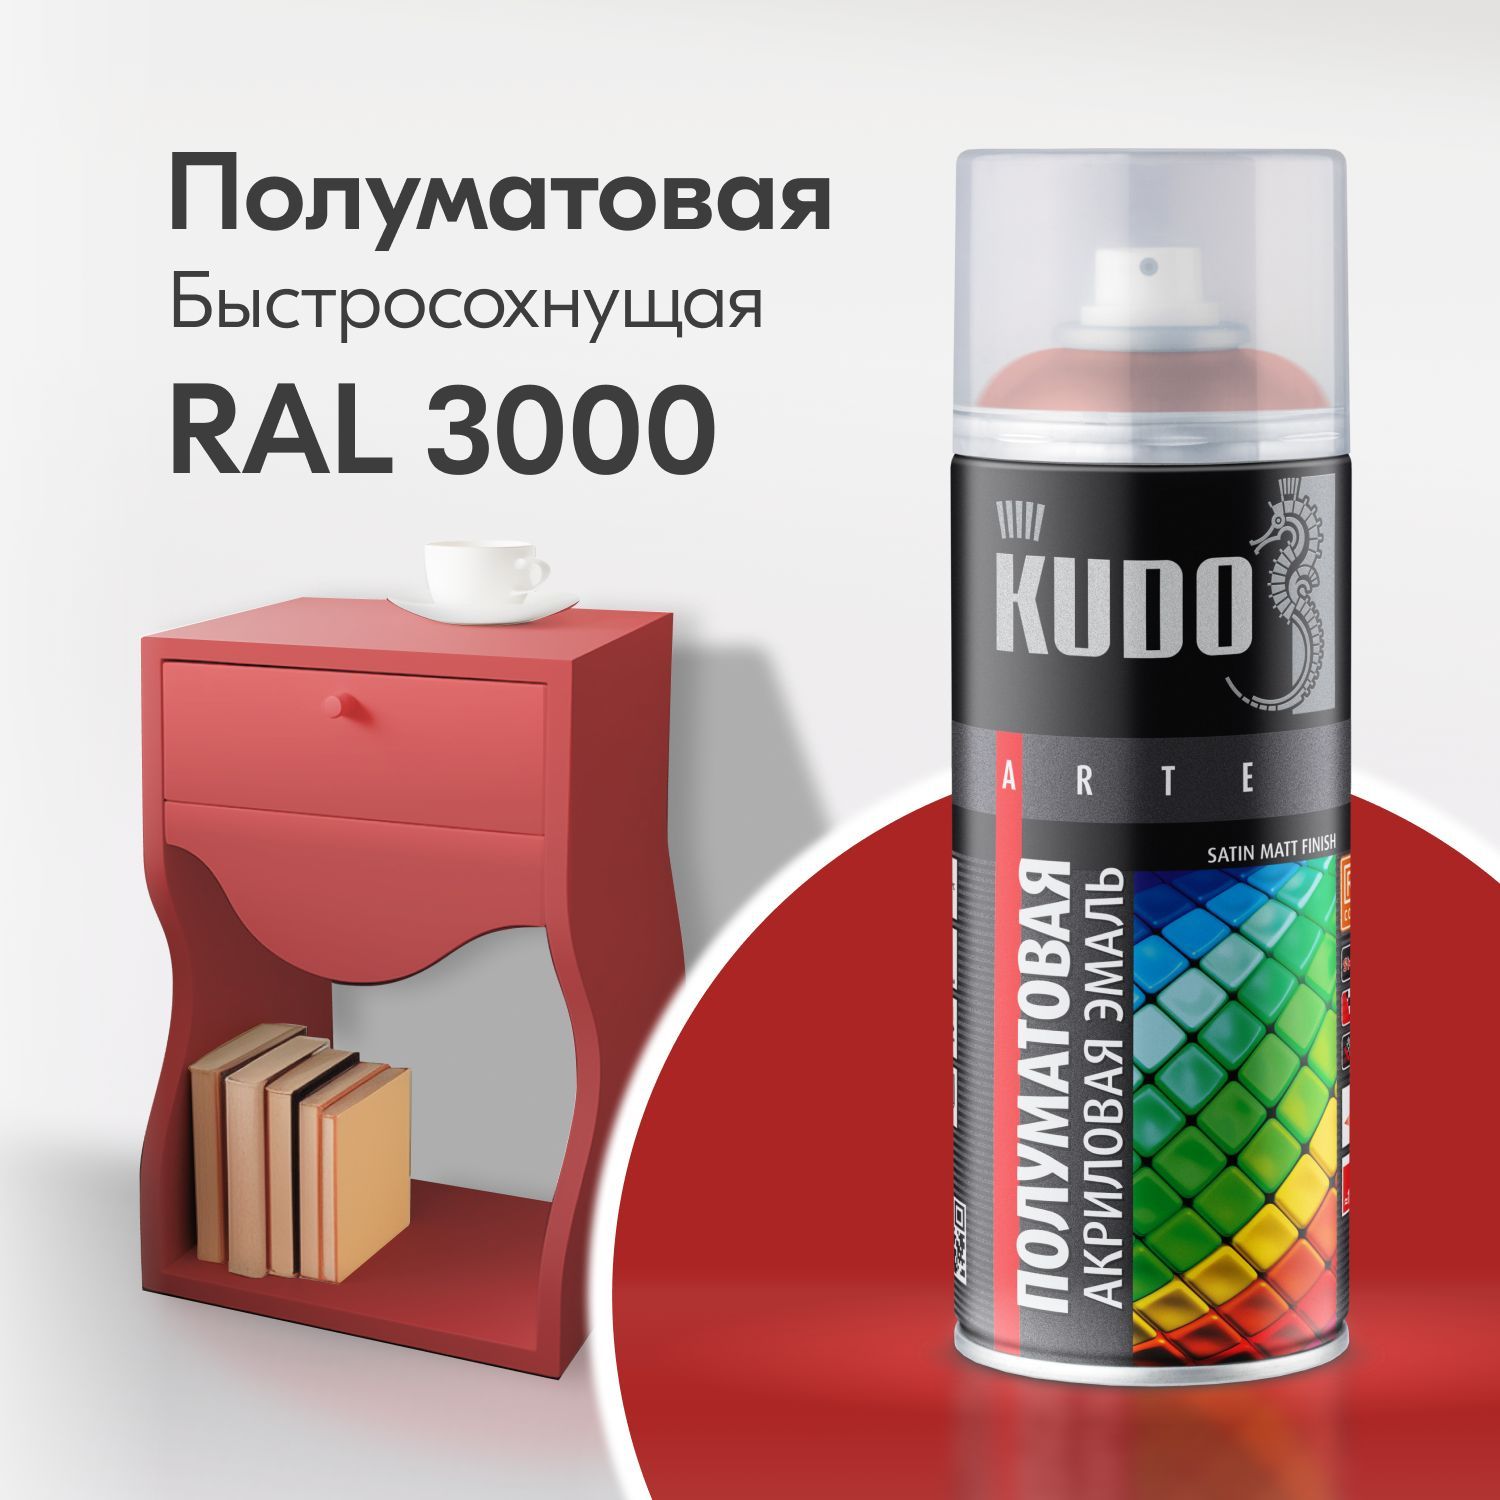 краска kudo для бытовой техники белая 520 мл упаковка 6 шт Краска аэрозоль акриловая сатин RAL 3000 огненно-красная 520 мл 